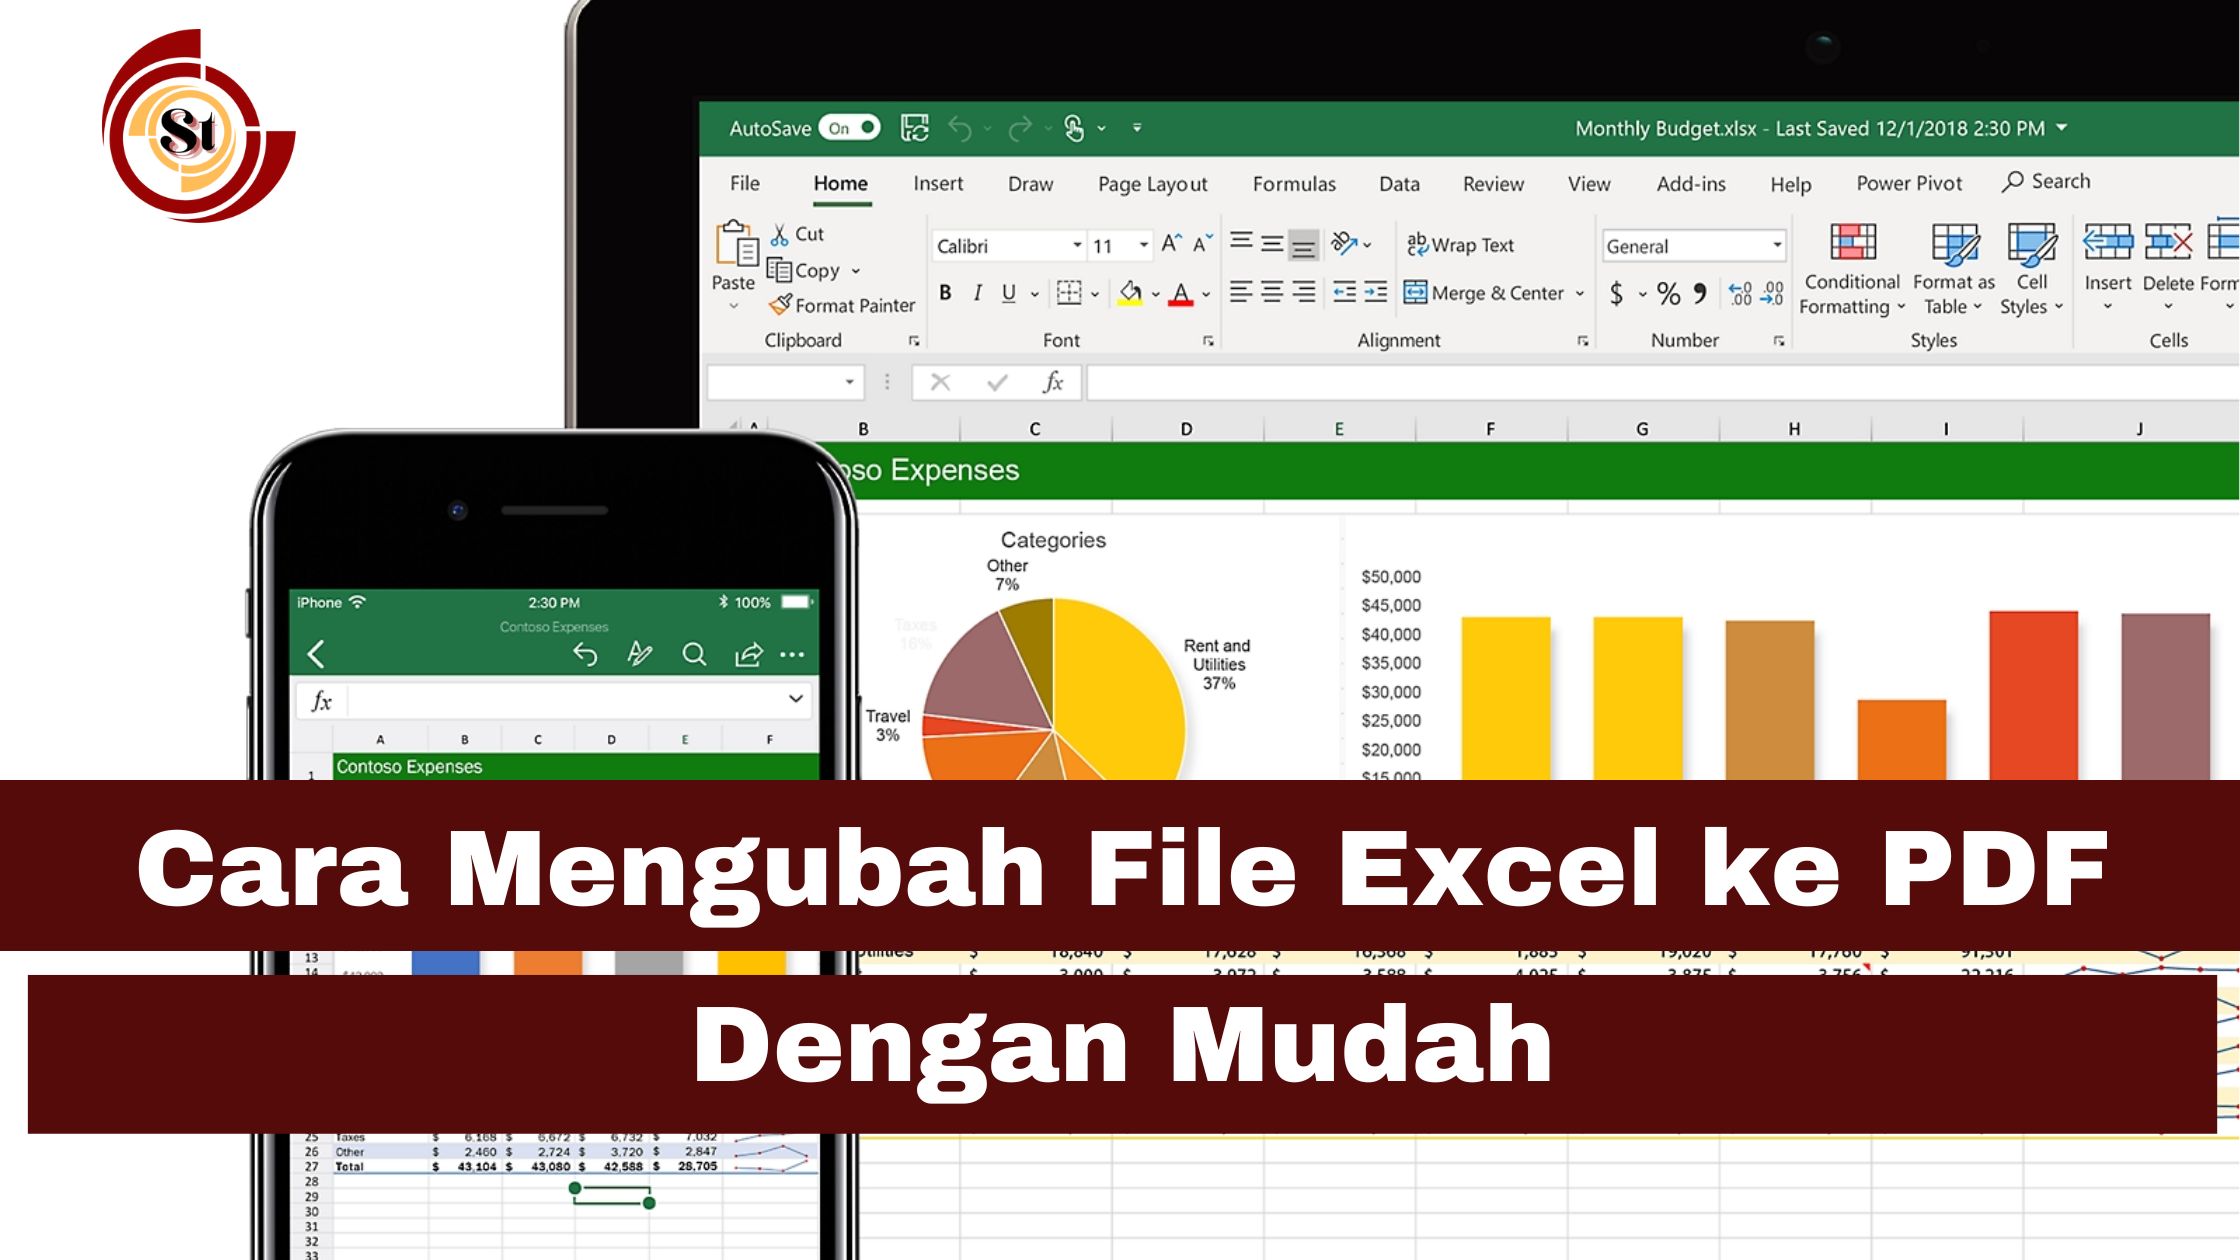 Cara Mengubah File Excel ke PDF